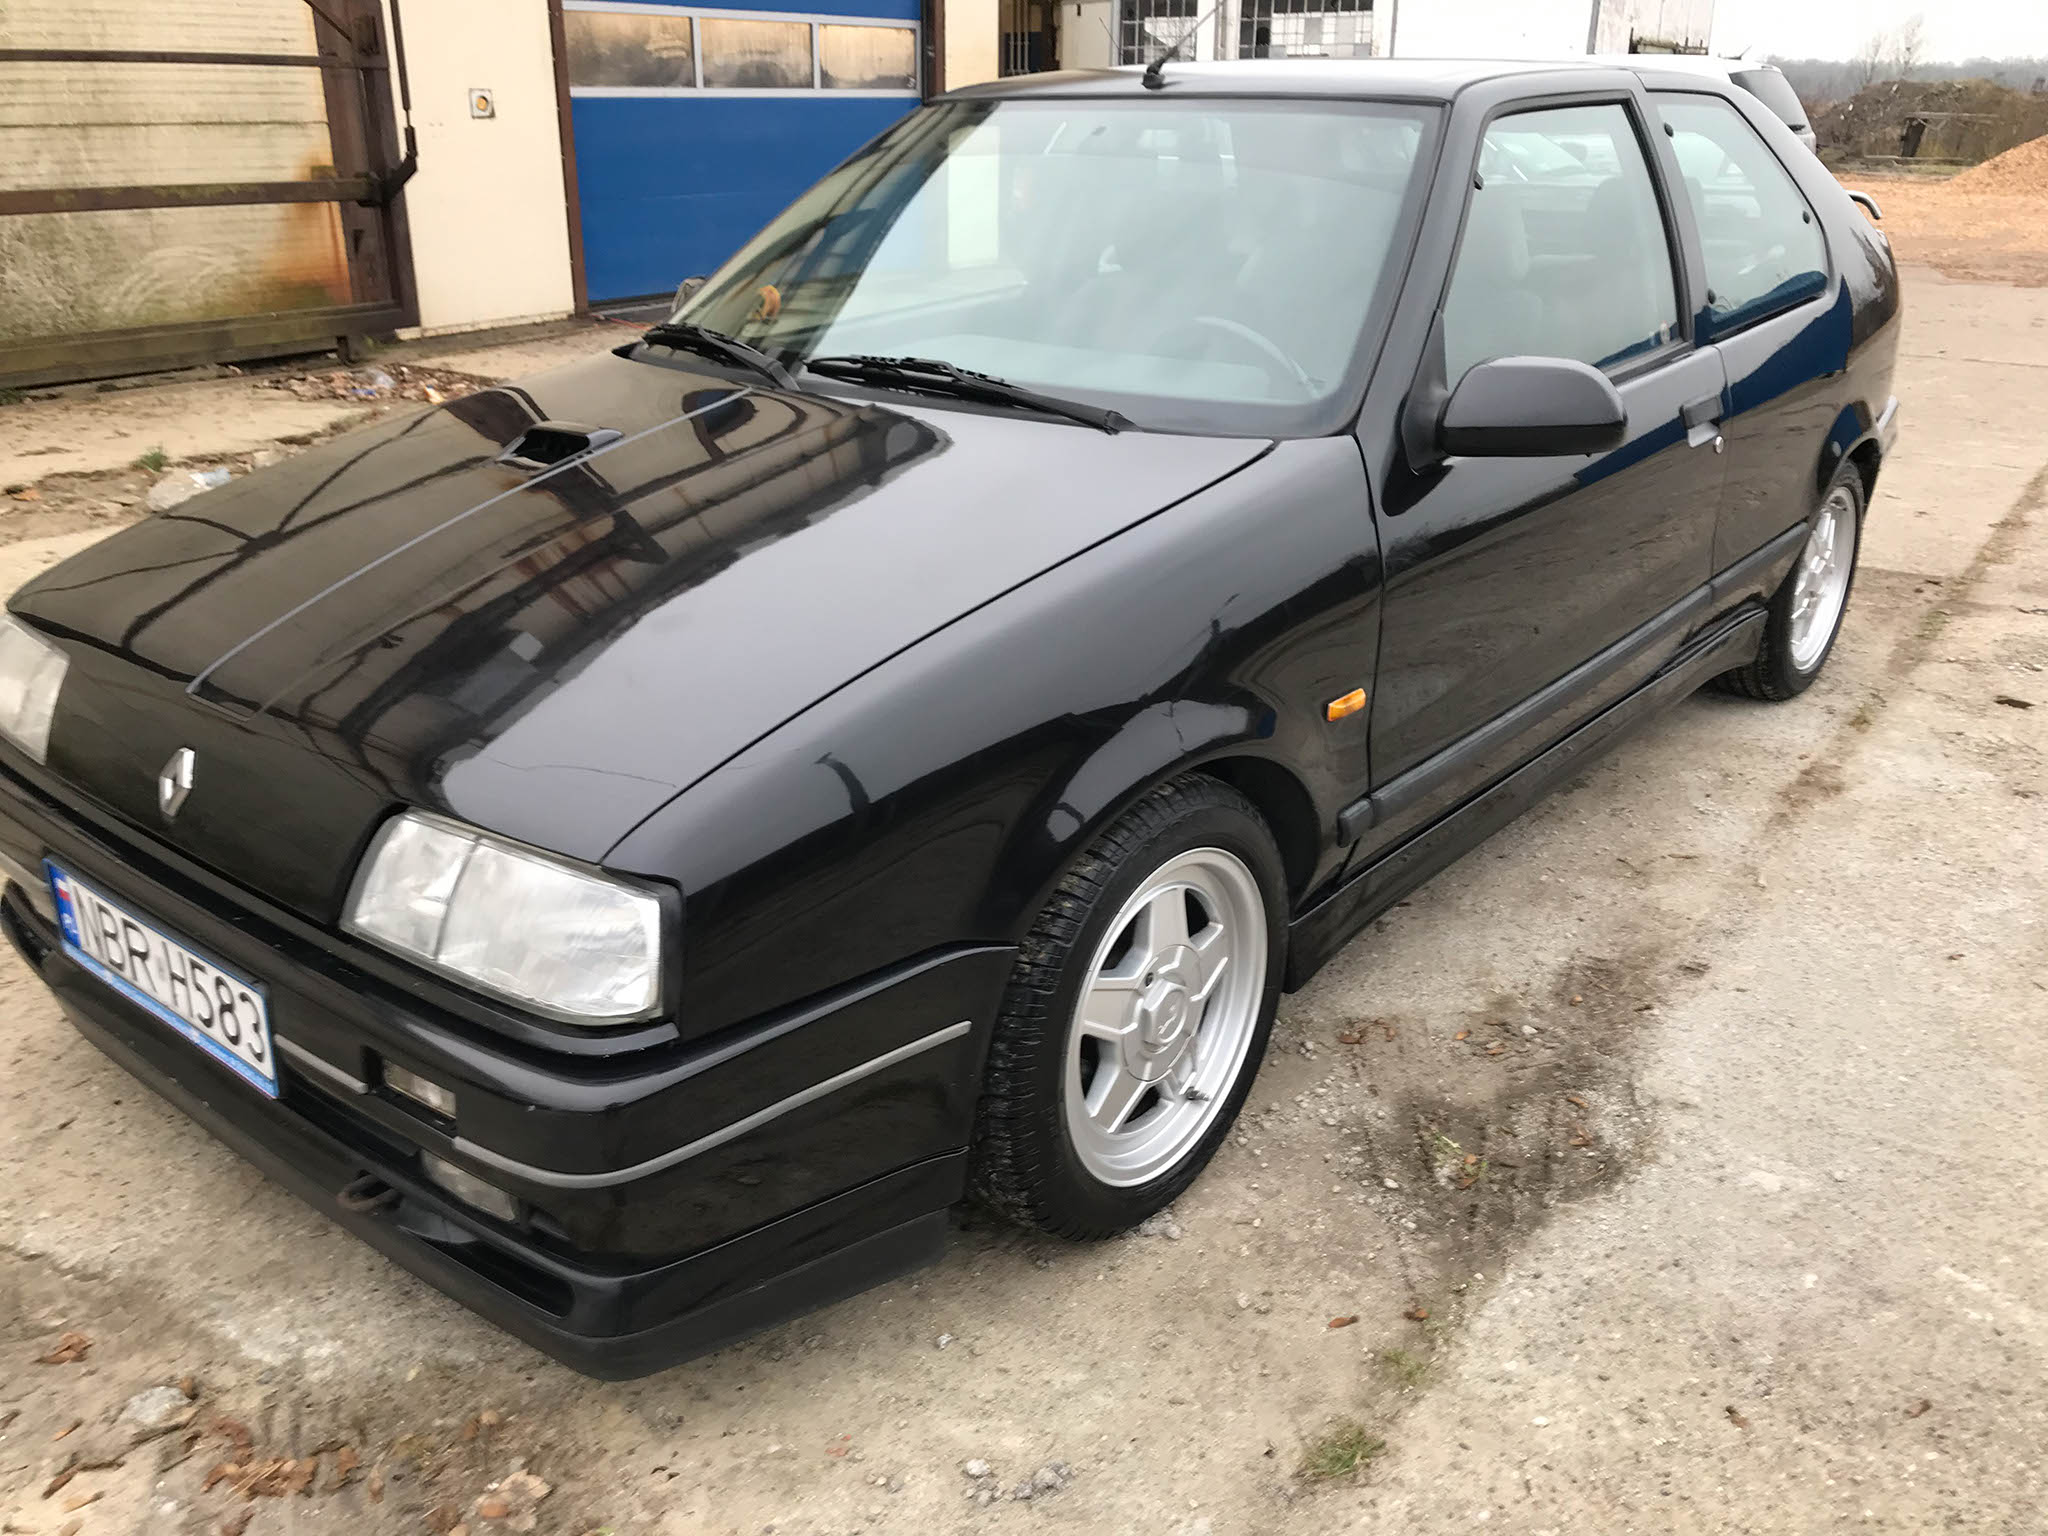 Renault 19 16V 1990 15000 PLN Braniewo Giełda klasyków